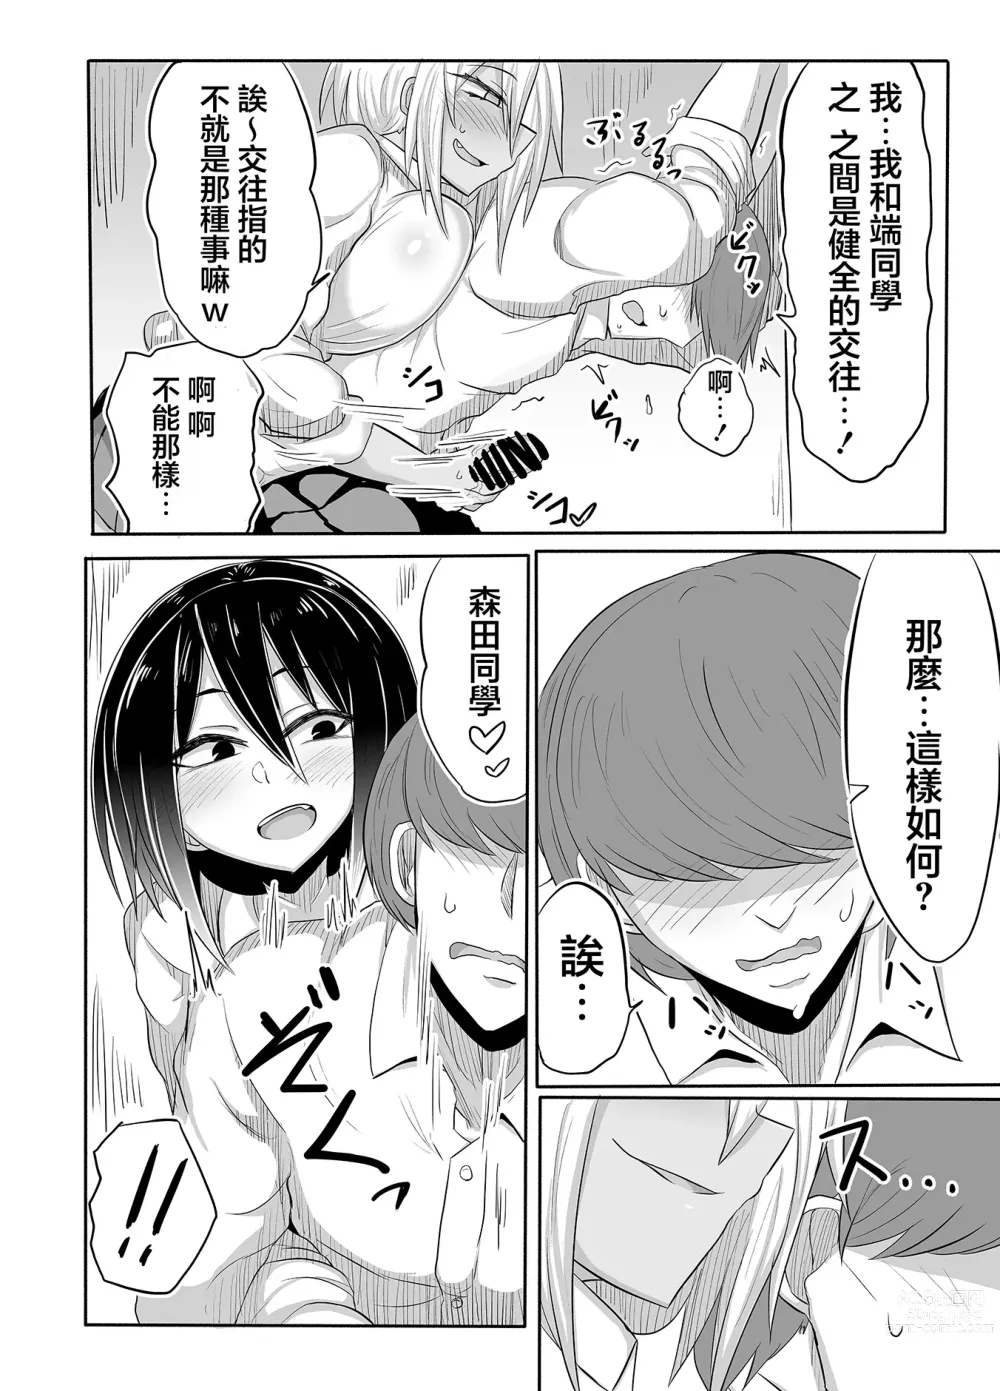 Page 9 of doujinshi 婊子JK麗莎醬的情況